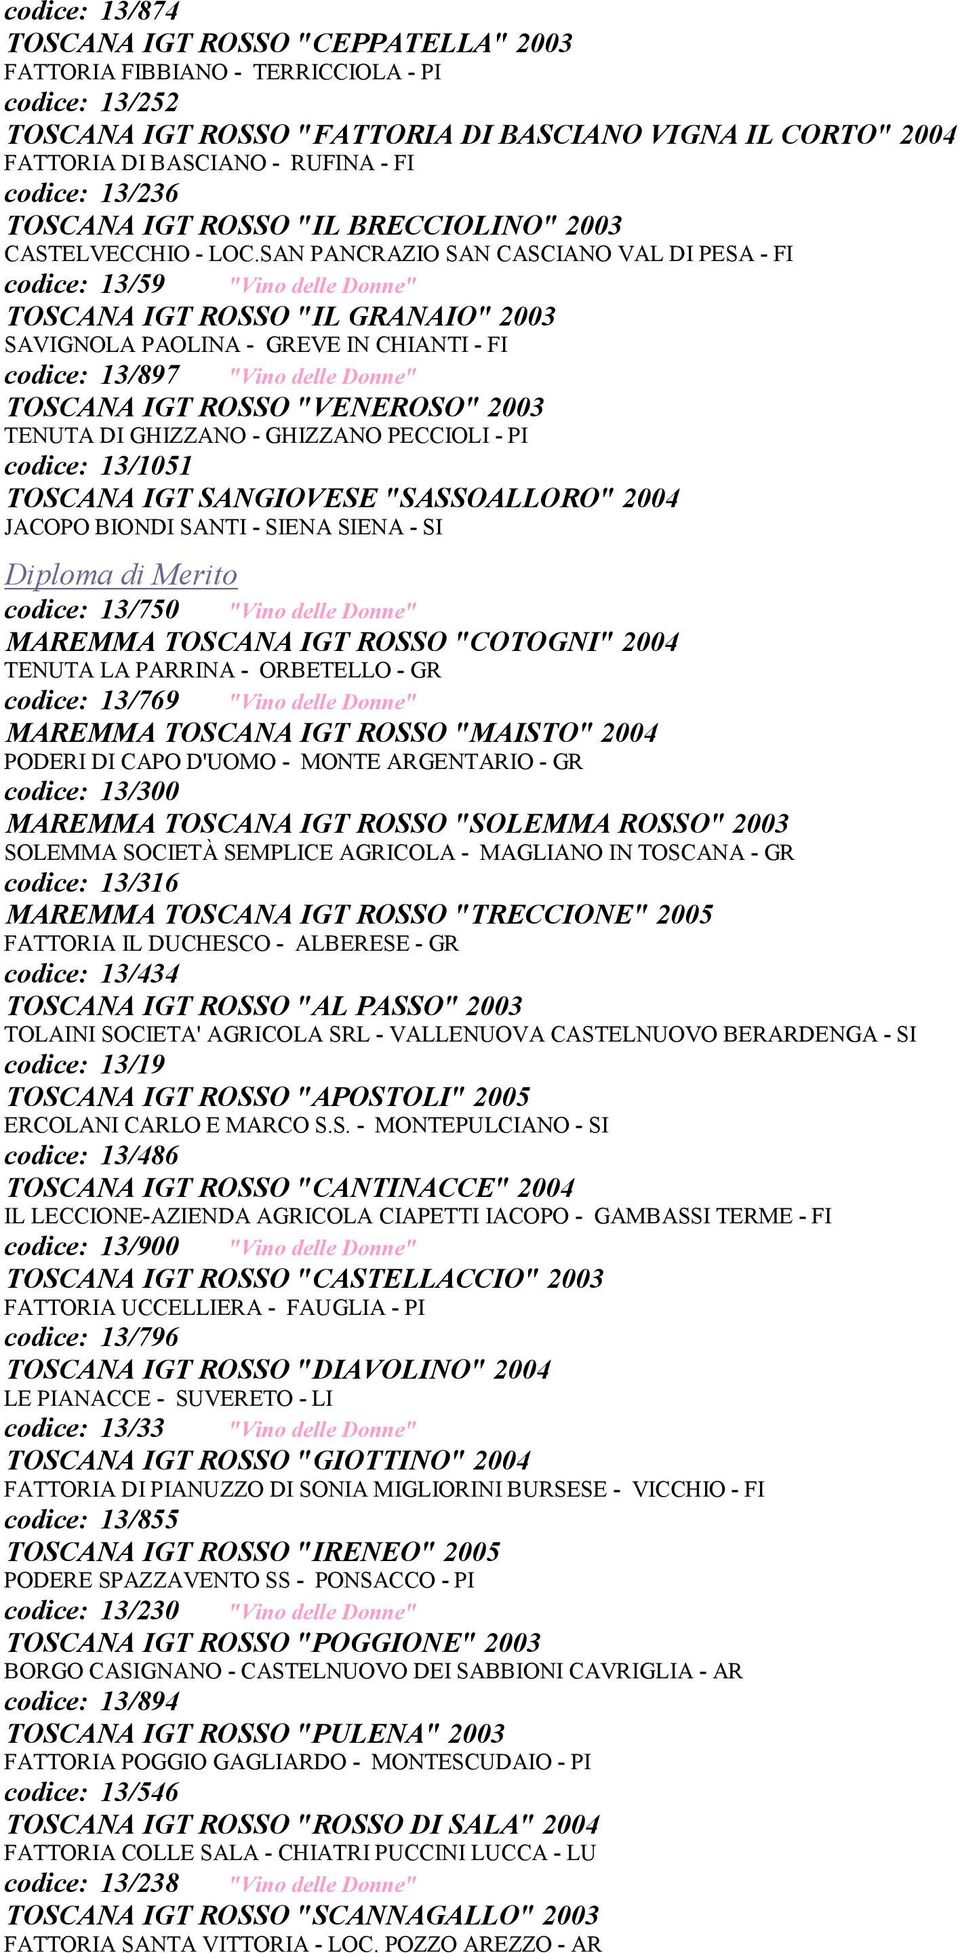 SAN PANCRAZIO SAN CASCIANO VAL DI PESA - FI codice: 13/59 "Vino delle Donne" TOSCANA IGT ROSSO "IL GRANAIO" 2003 SAVIGNOLA PAOLINA - GREVE IN CHIANTI - FI codice: 13/897 "Vino delle Donne" TOSCANA